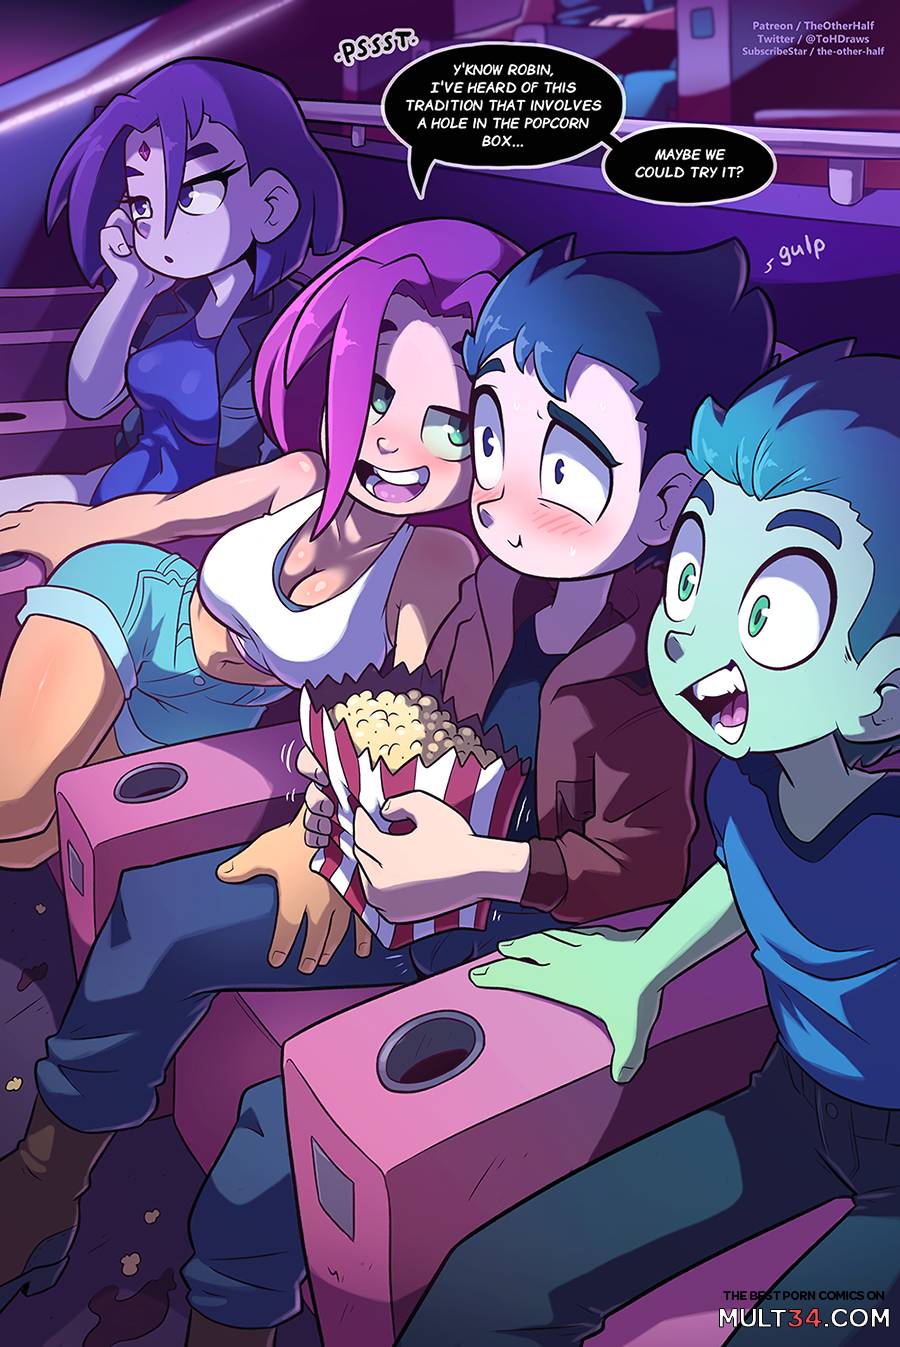 900px x 1347px - Teen Titans porn comics, cartoon porn comics, Rule 34